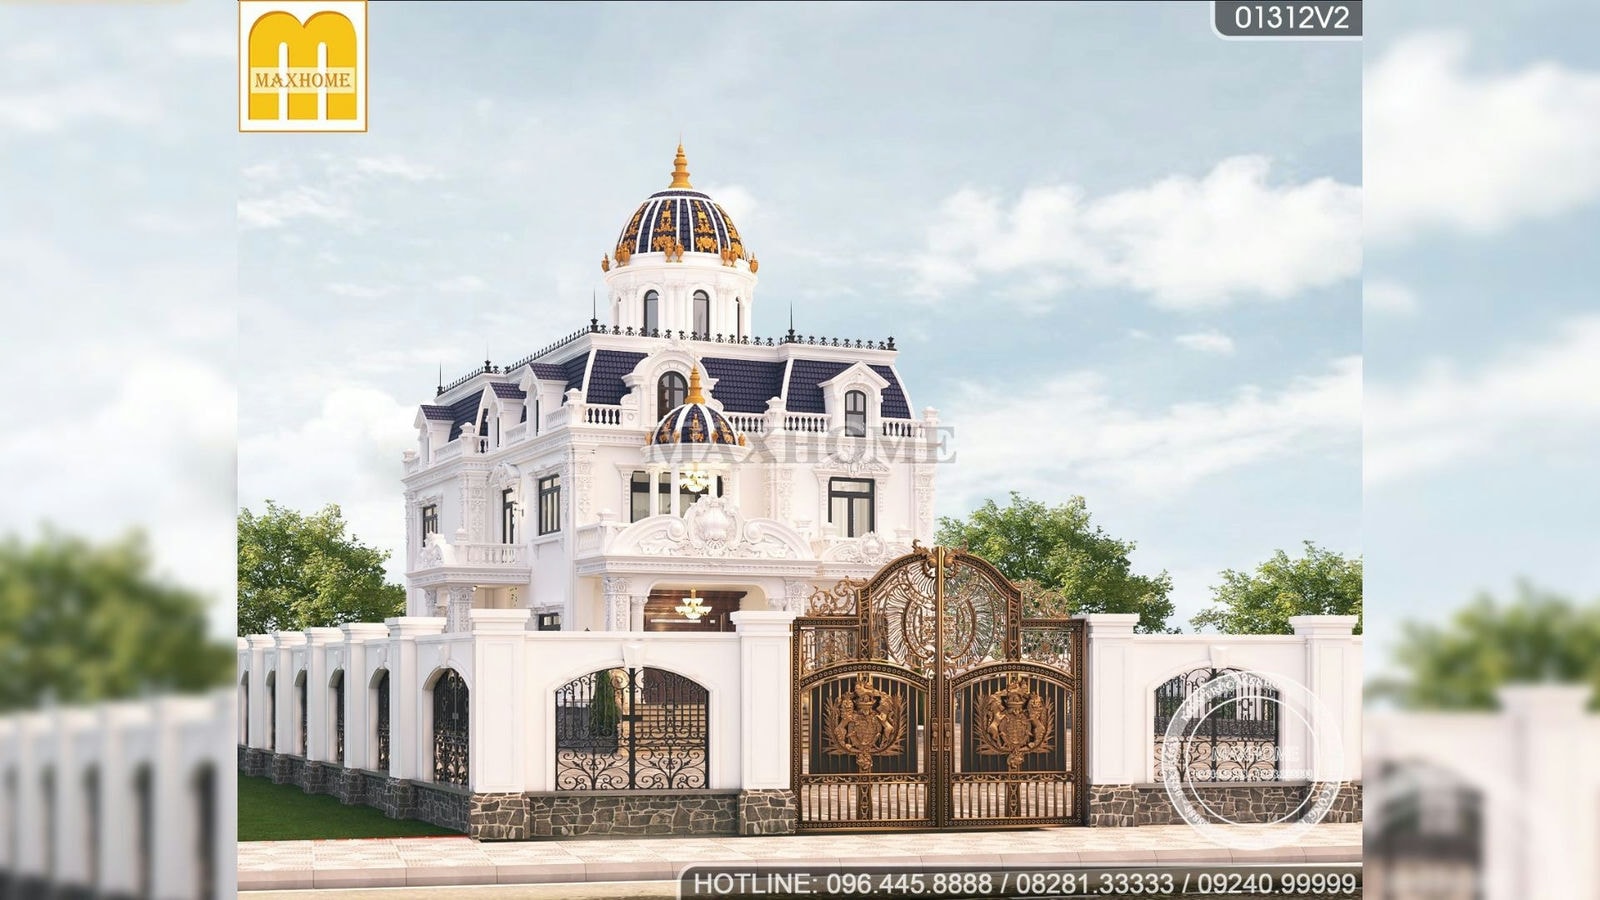 6,9 tỷ trọn gói lâu đài tân cổ điển đẹp lung linh tại Bình Phước | MH01612